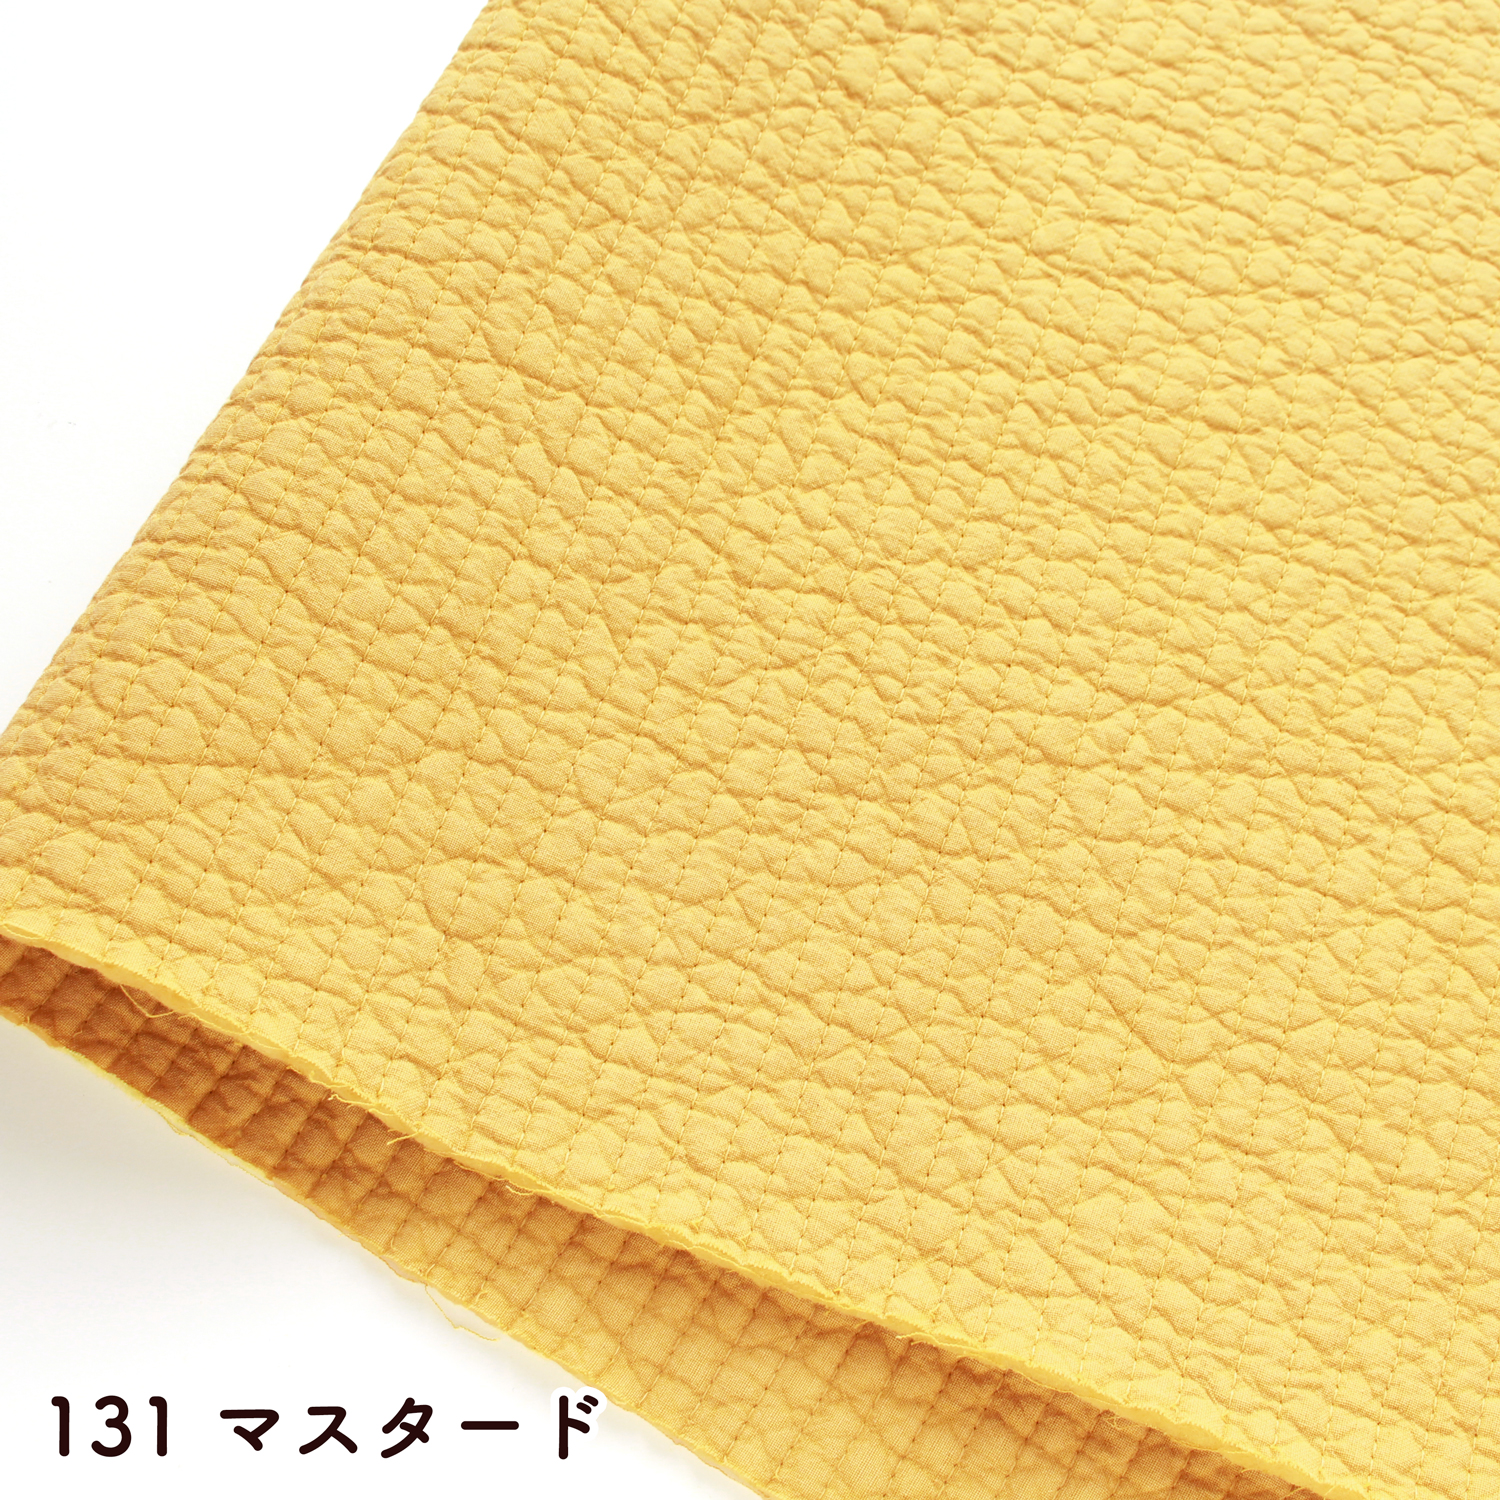 ■NBY307R nubi ヌビ 韓国伝統キルティング生地 巾7mmサイズ 約8m巻 (巻) 9